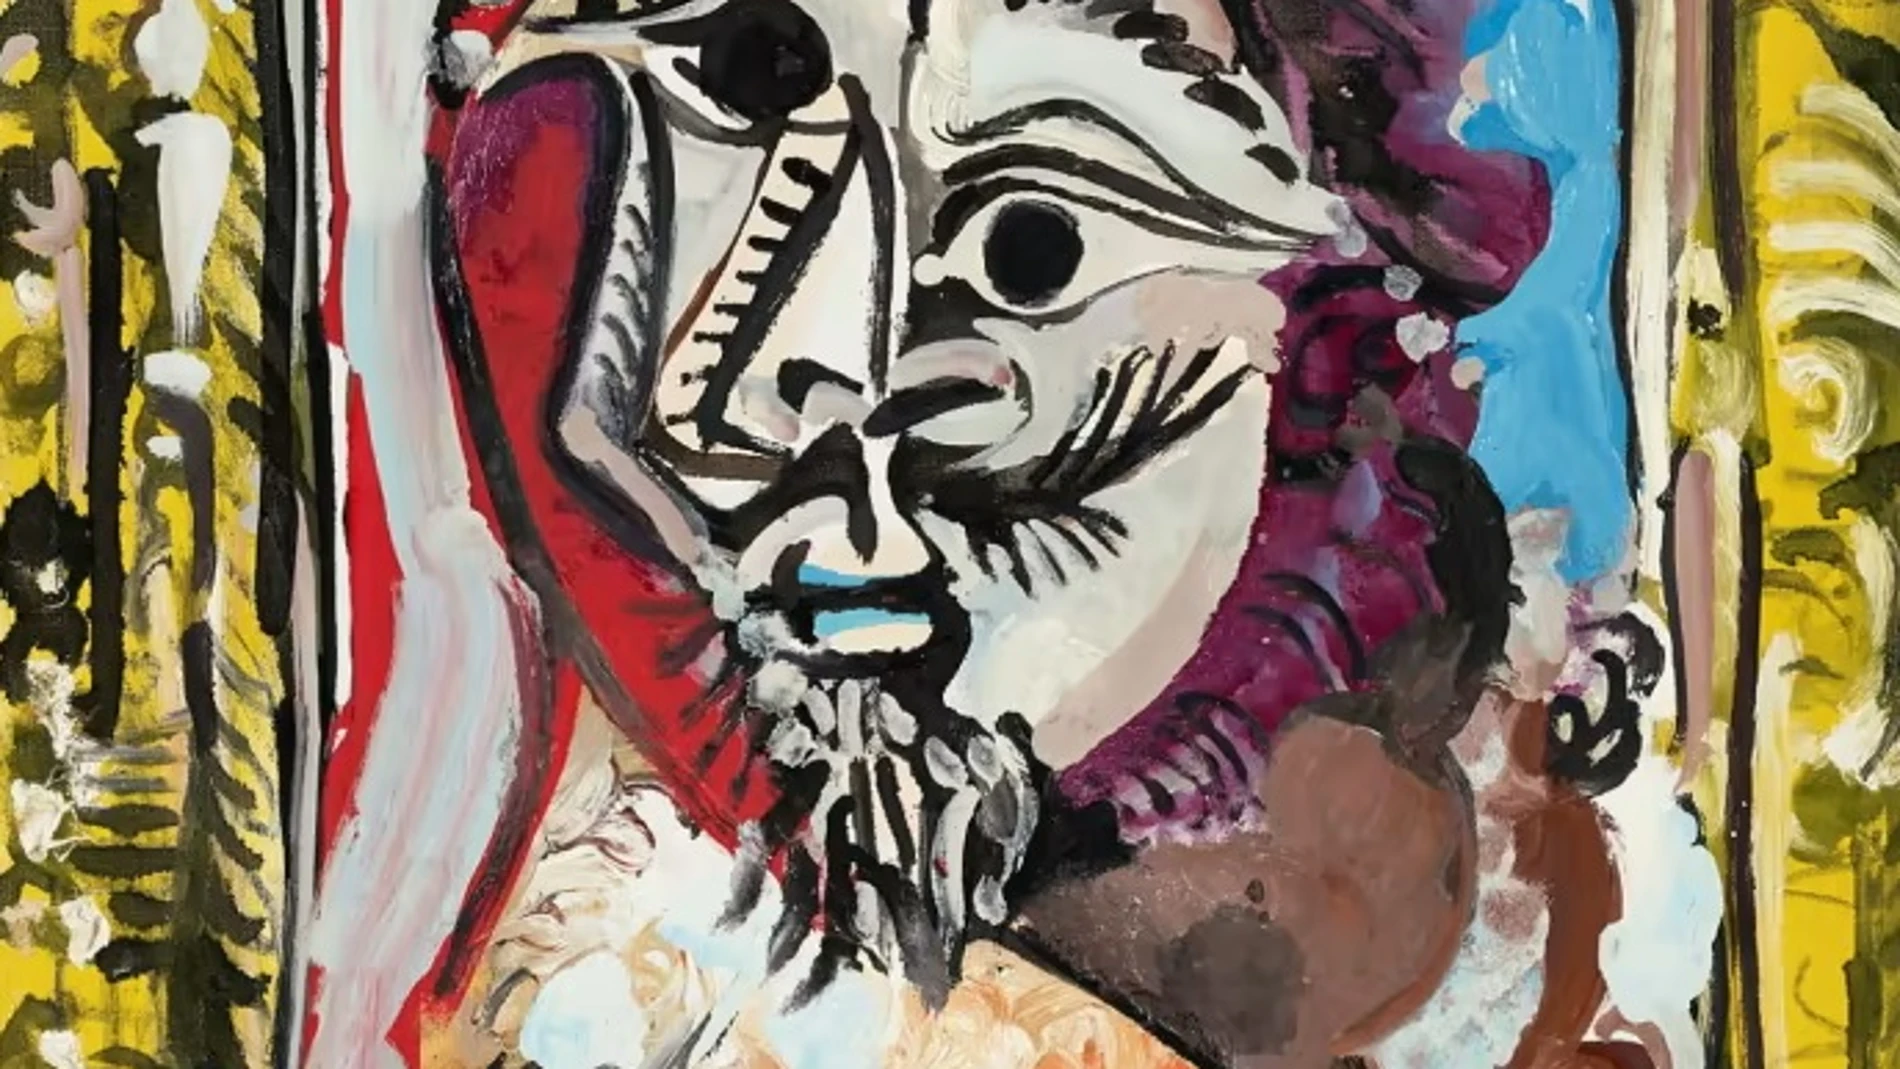 Cuadro 'Buste d'homme dans un cadre', de Picasso